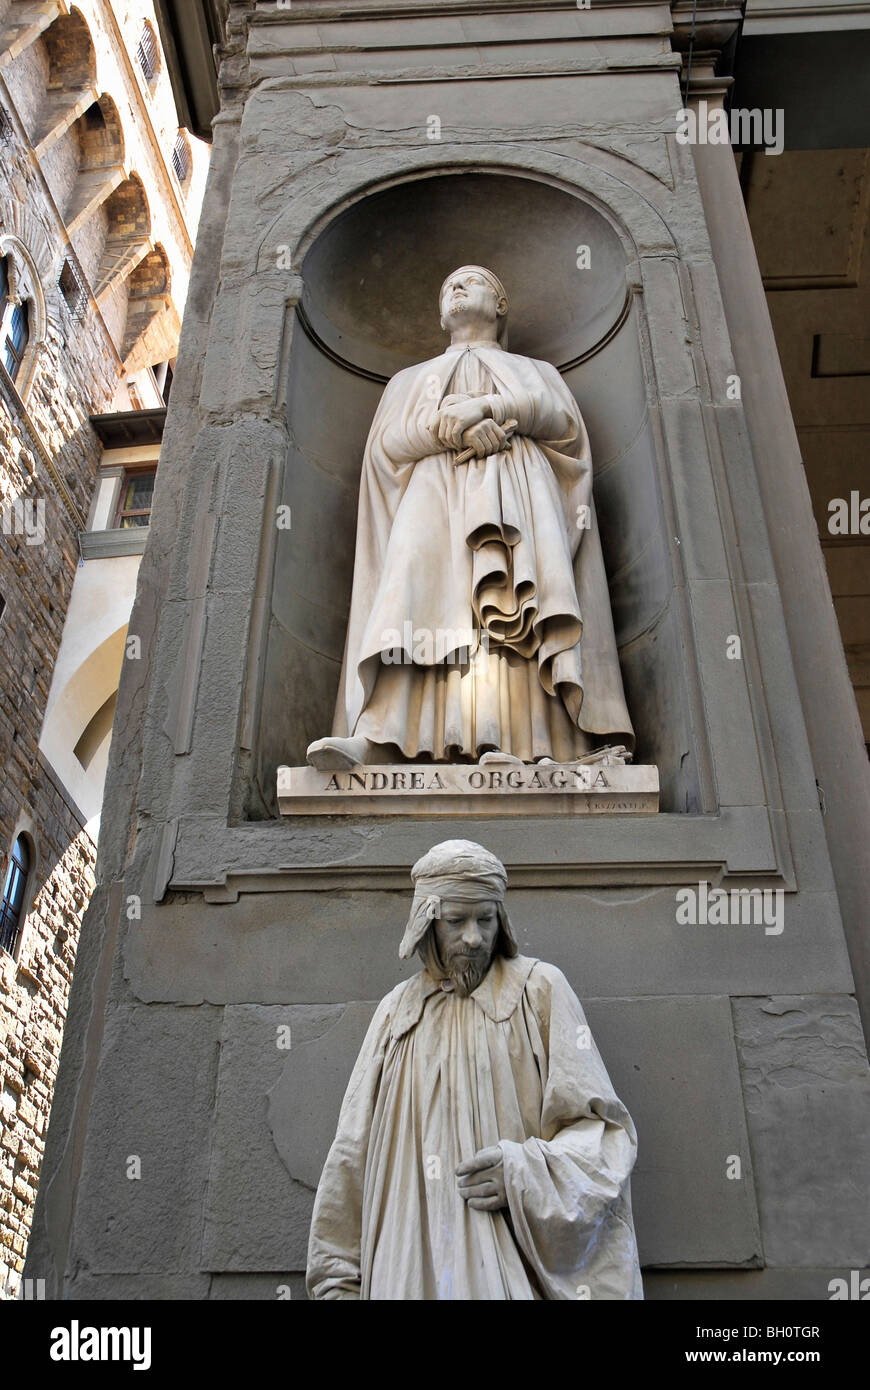 Eine Person in der Verkleidung unter einer Statue, Florenz, Toskana, Italien, Europa Stockfoto